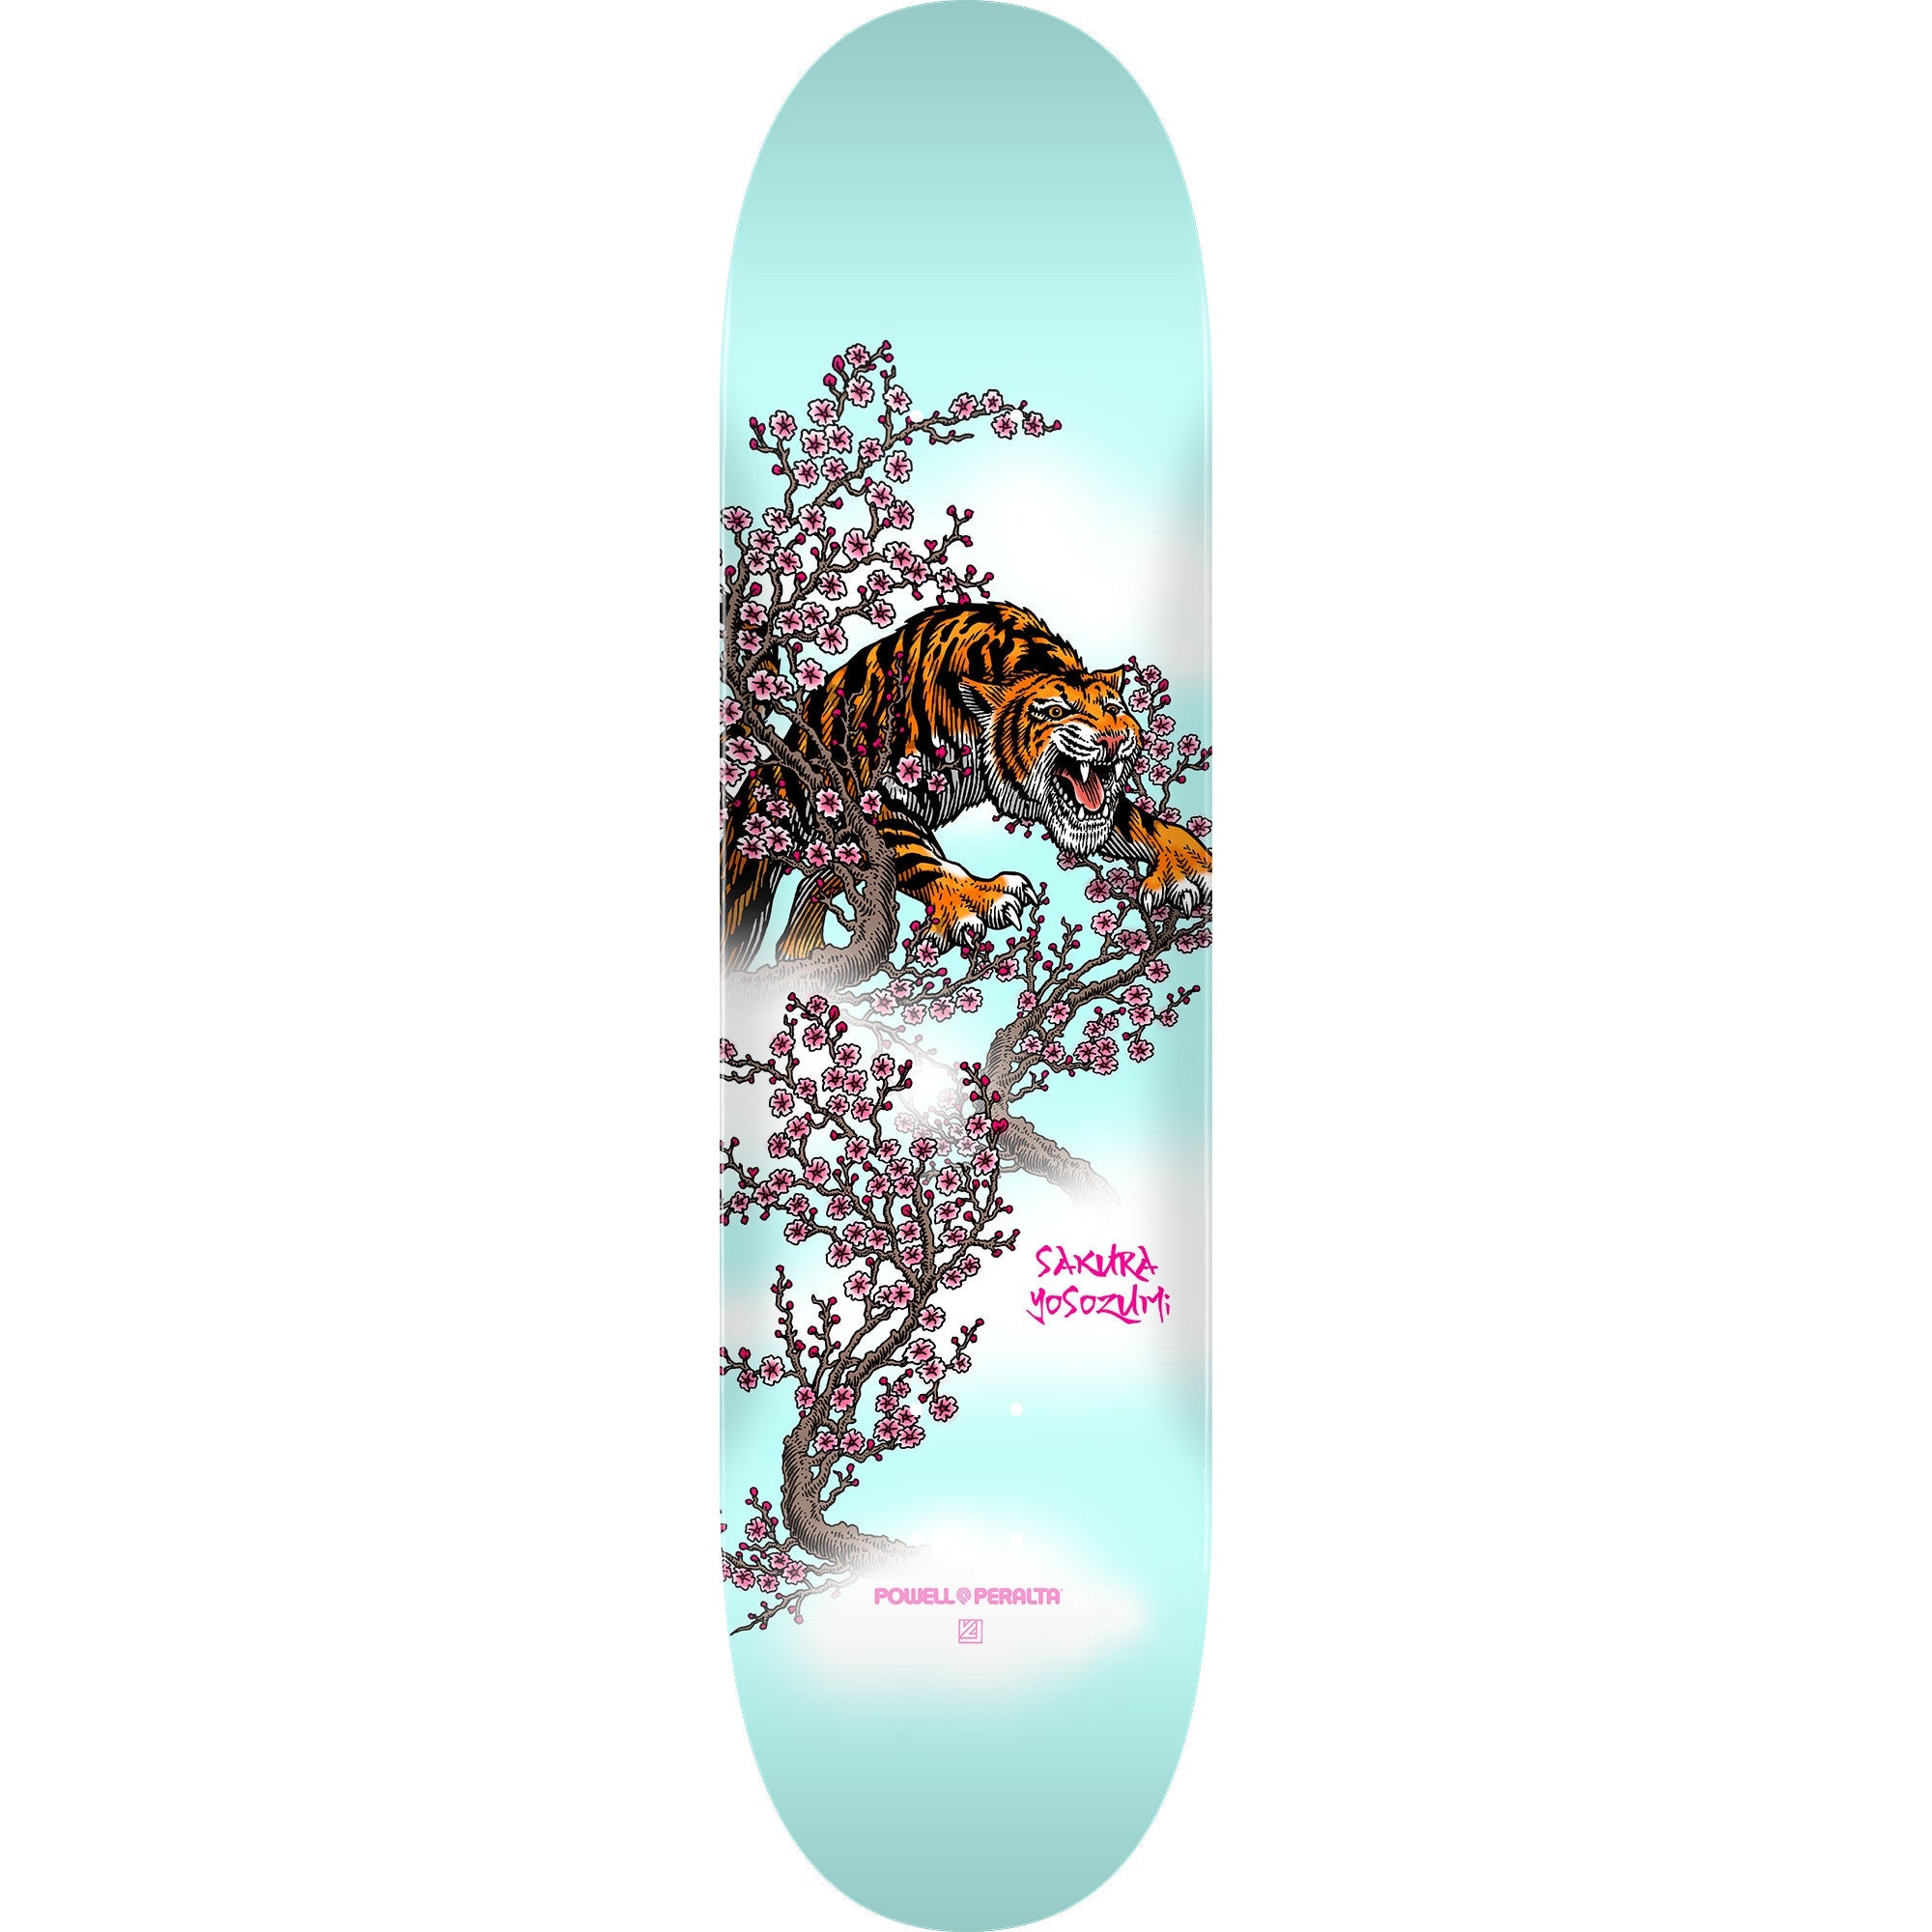 Yosozumi Powell Peralta Tiger Skateboard Deck